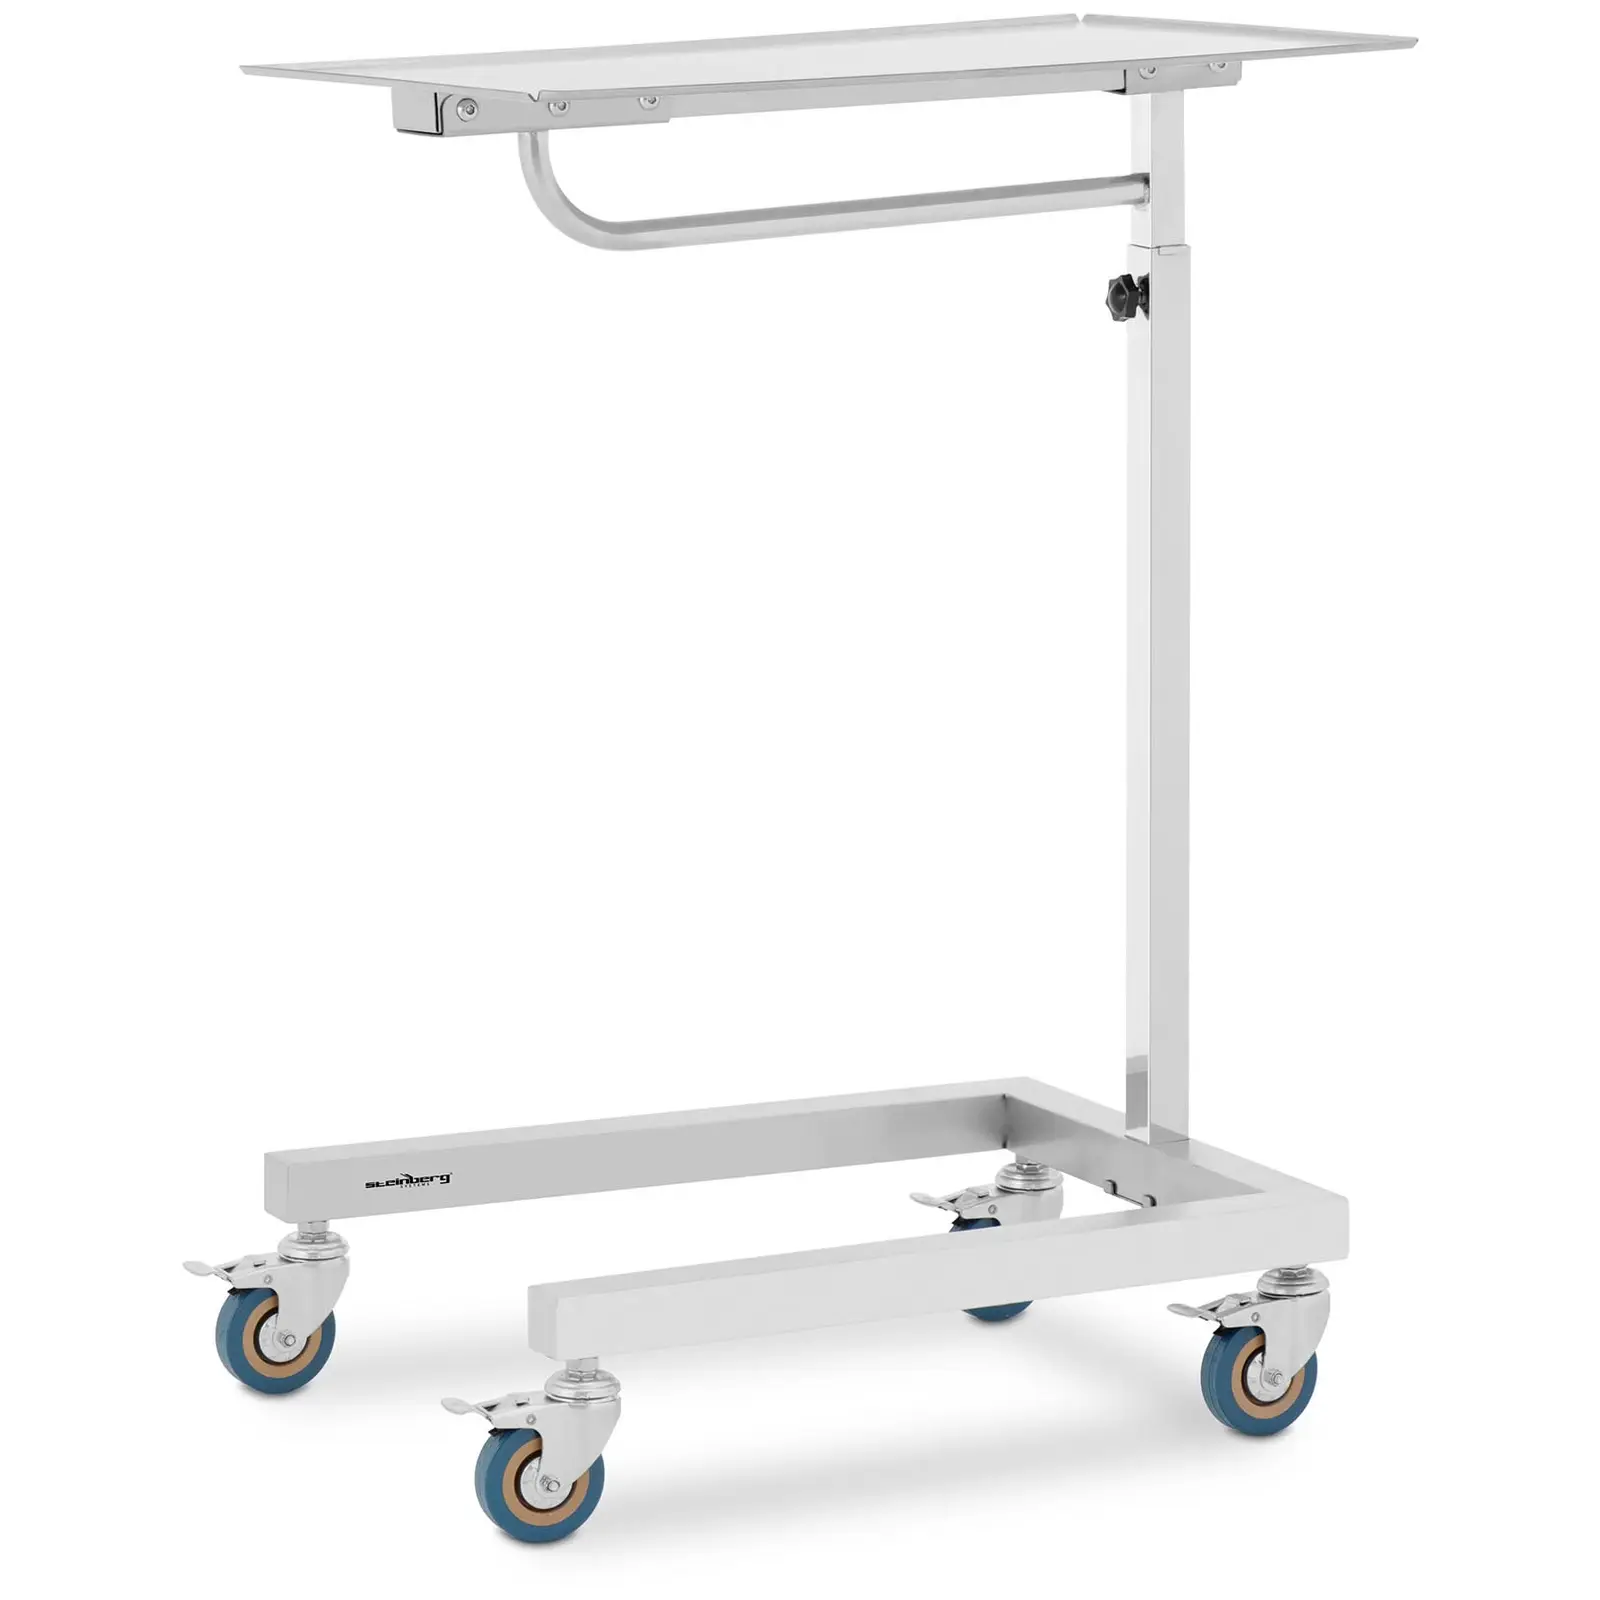 Prietaisų vežimėlis - 3 ratai - 60 x 40 mm - reguliuojamas aukštis - nerūdijantis plienas / guma